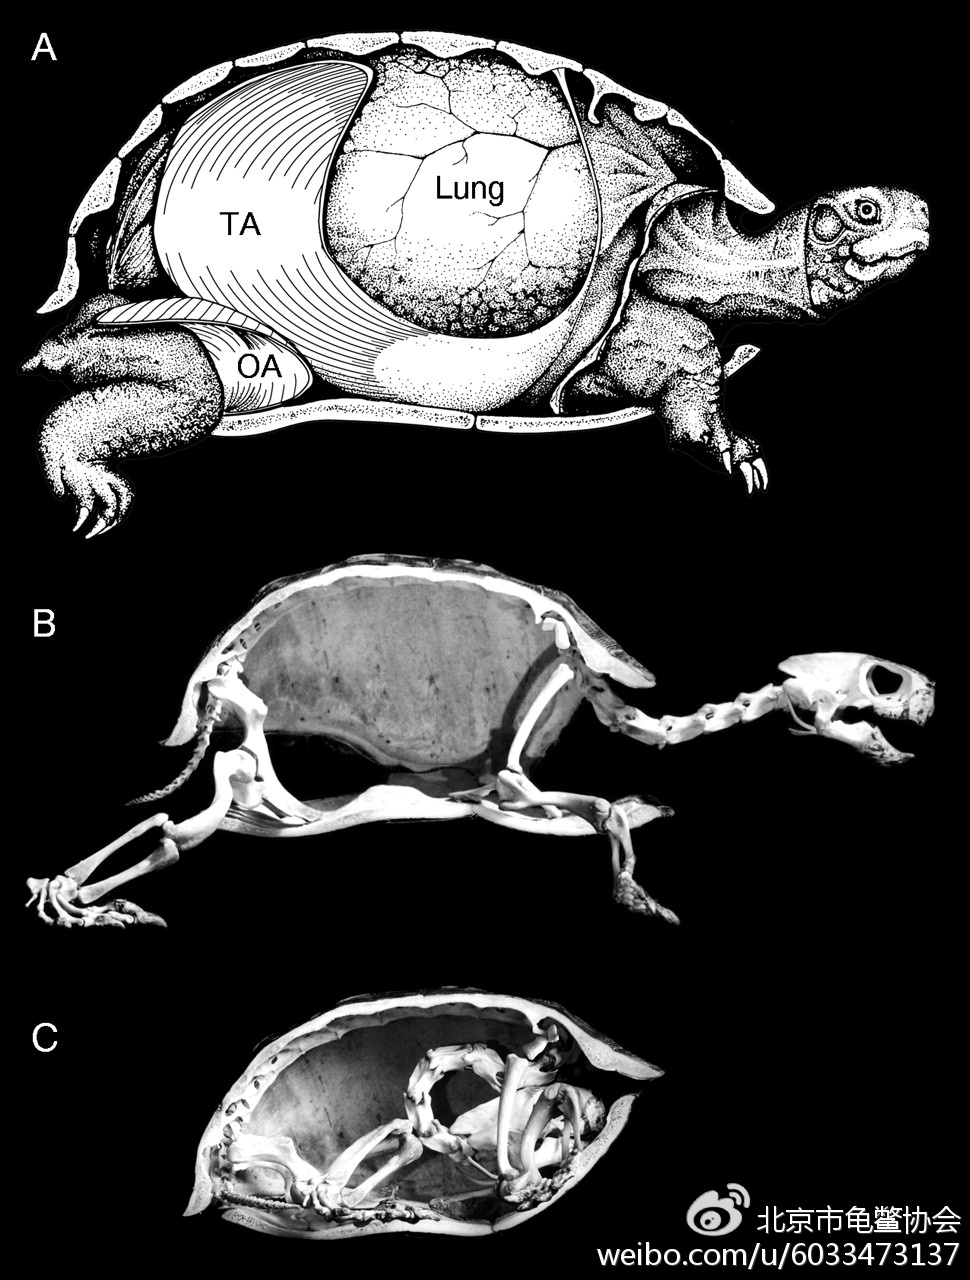 纵剖图显示龟类四肢及头部在伸展与完全蜷缩状态下体腔容积（肺容积）的改变